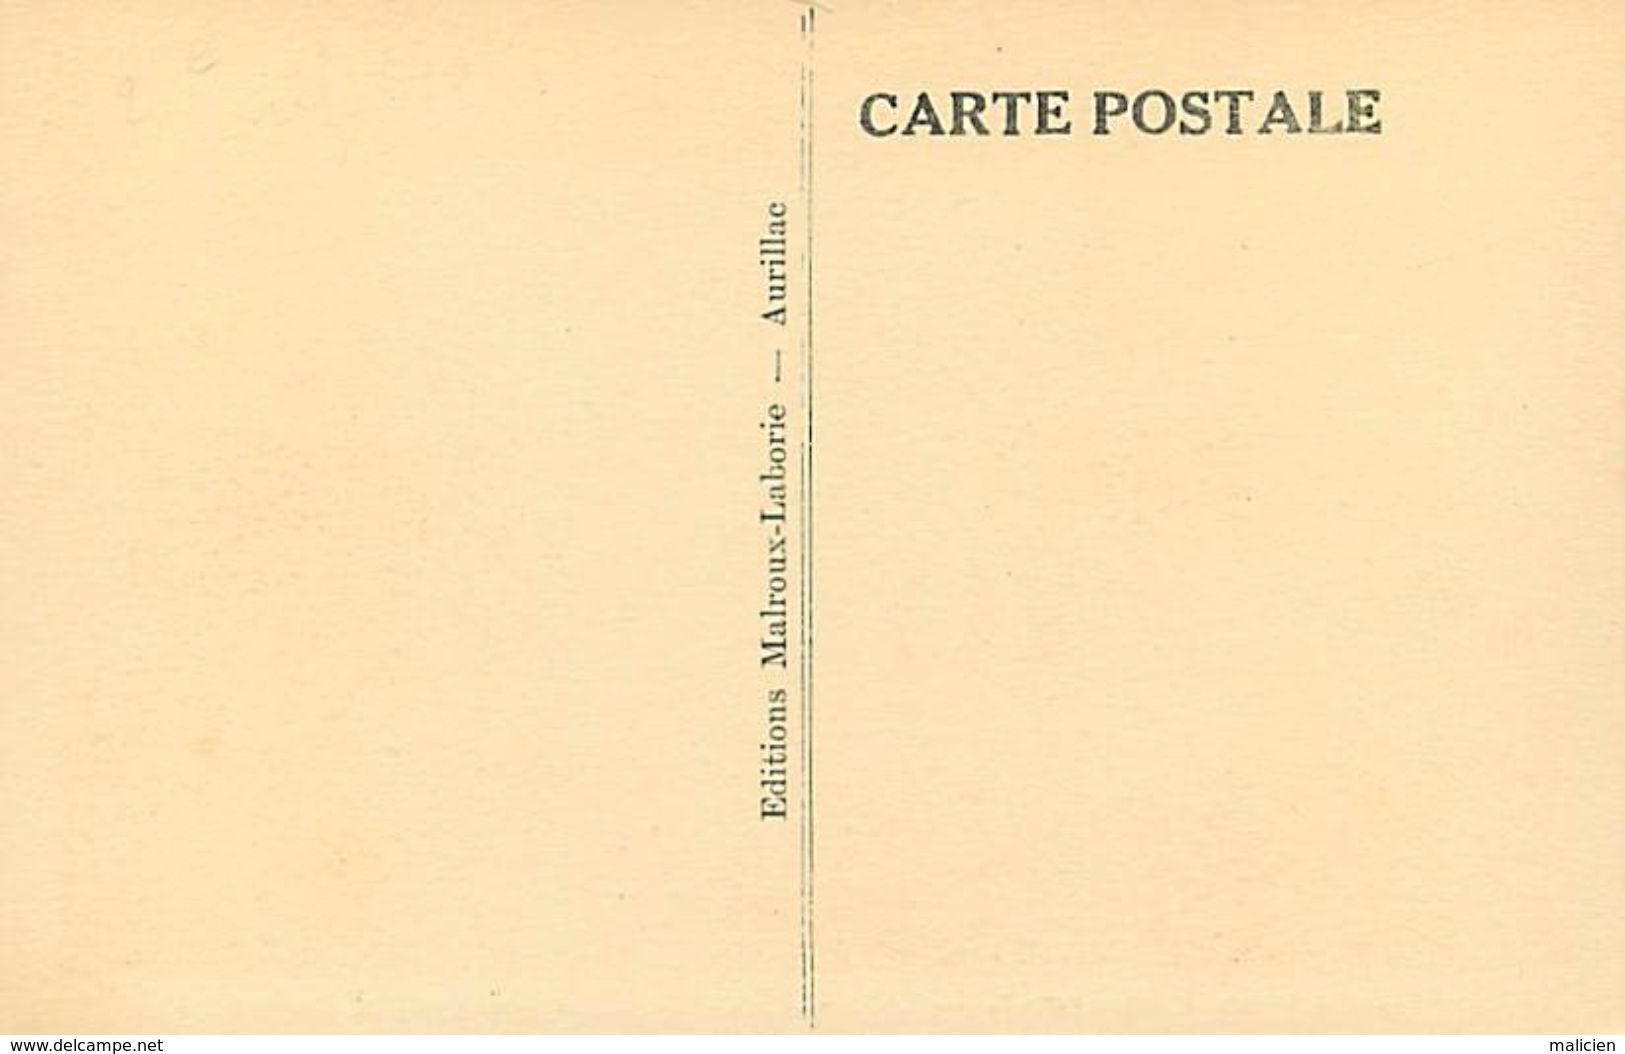 - Dpts Div.-ref-WW30 - Cantal - Jussac - Quartier Du Pont D Authre - Carte Bon Etat - - Jussac